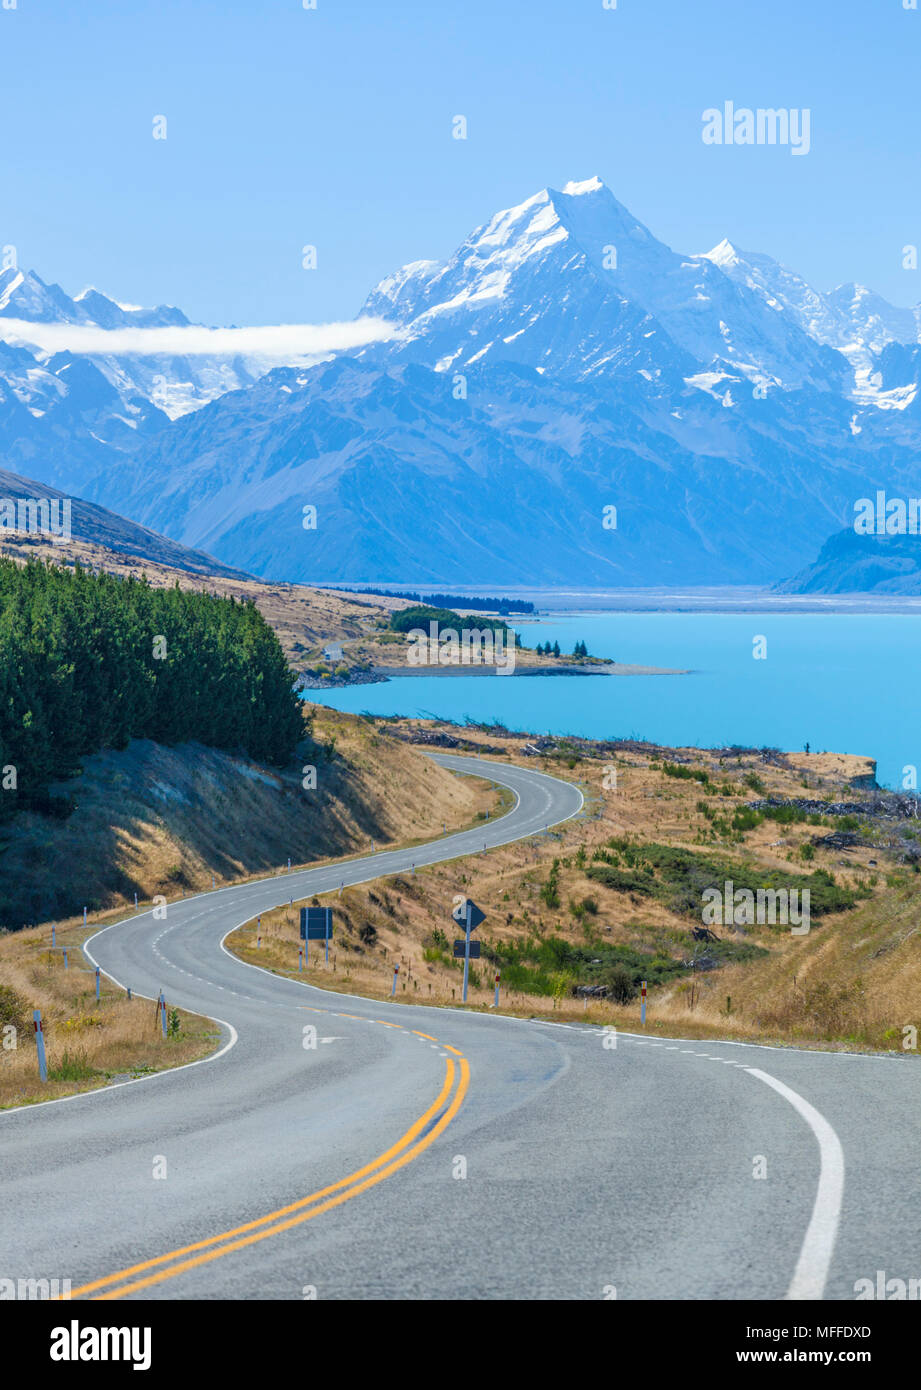 La Nouvelle-Zélande île du Sud Nouvelle-Zélande une route sinueuse sans trafic à mount Cook national park par le côté de lac Pukaki Nouvelle-Zélande Banque D'Images